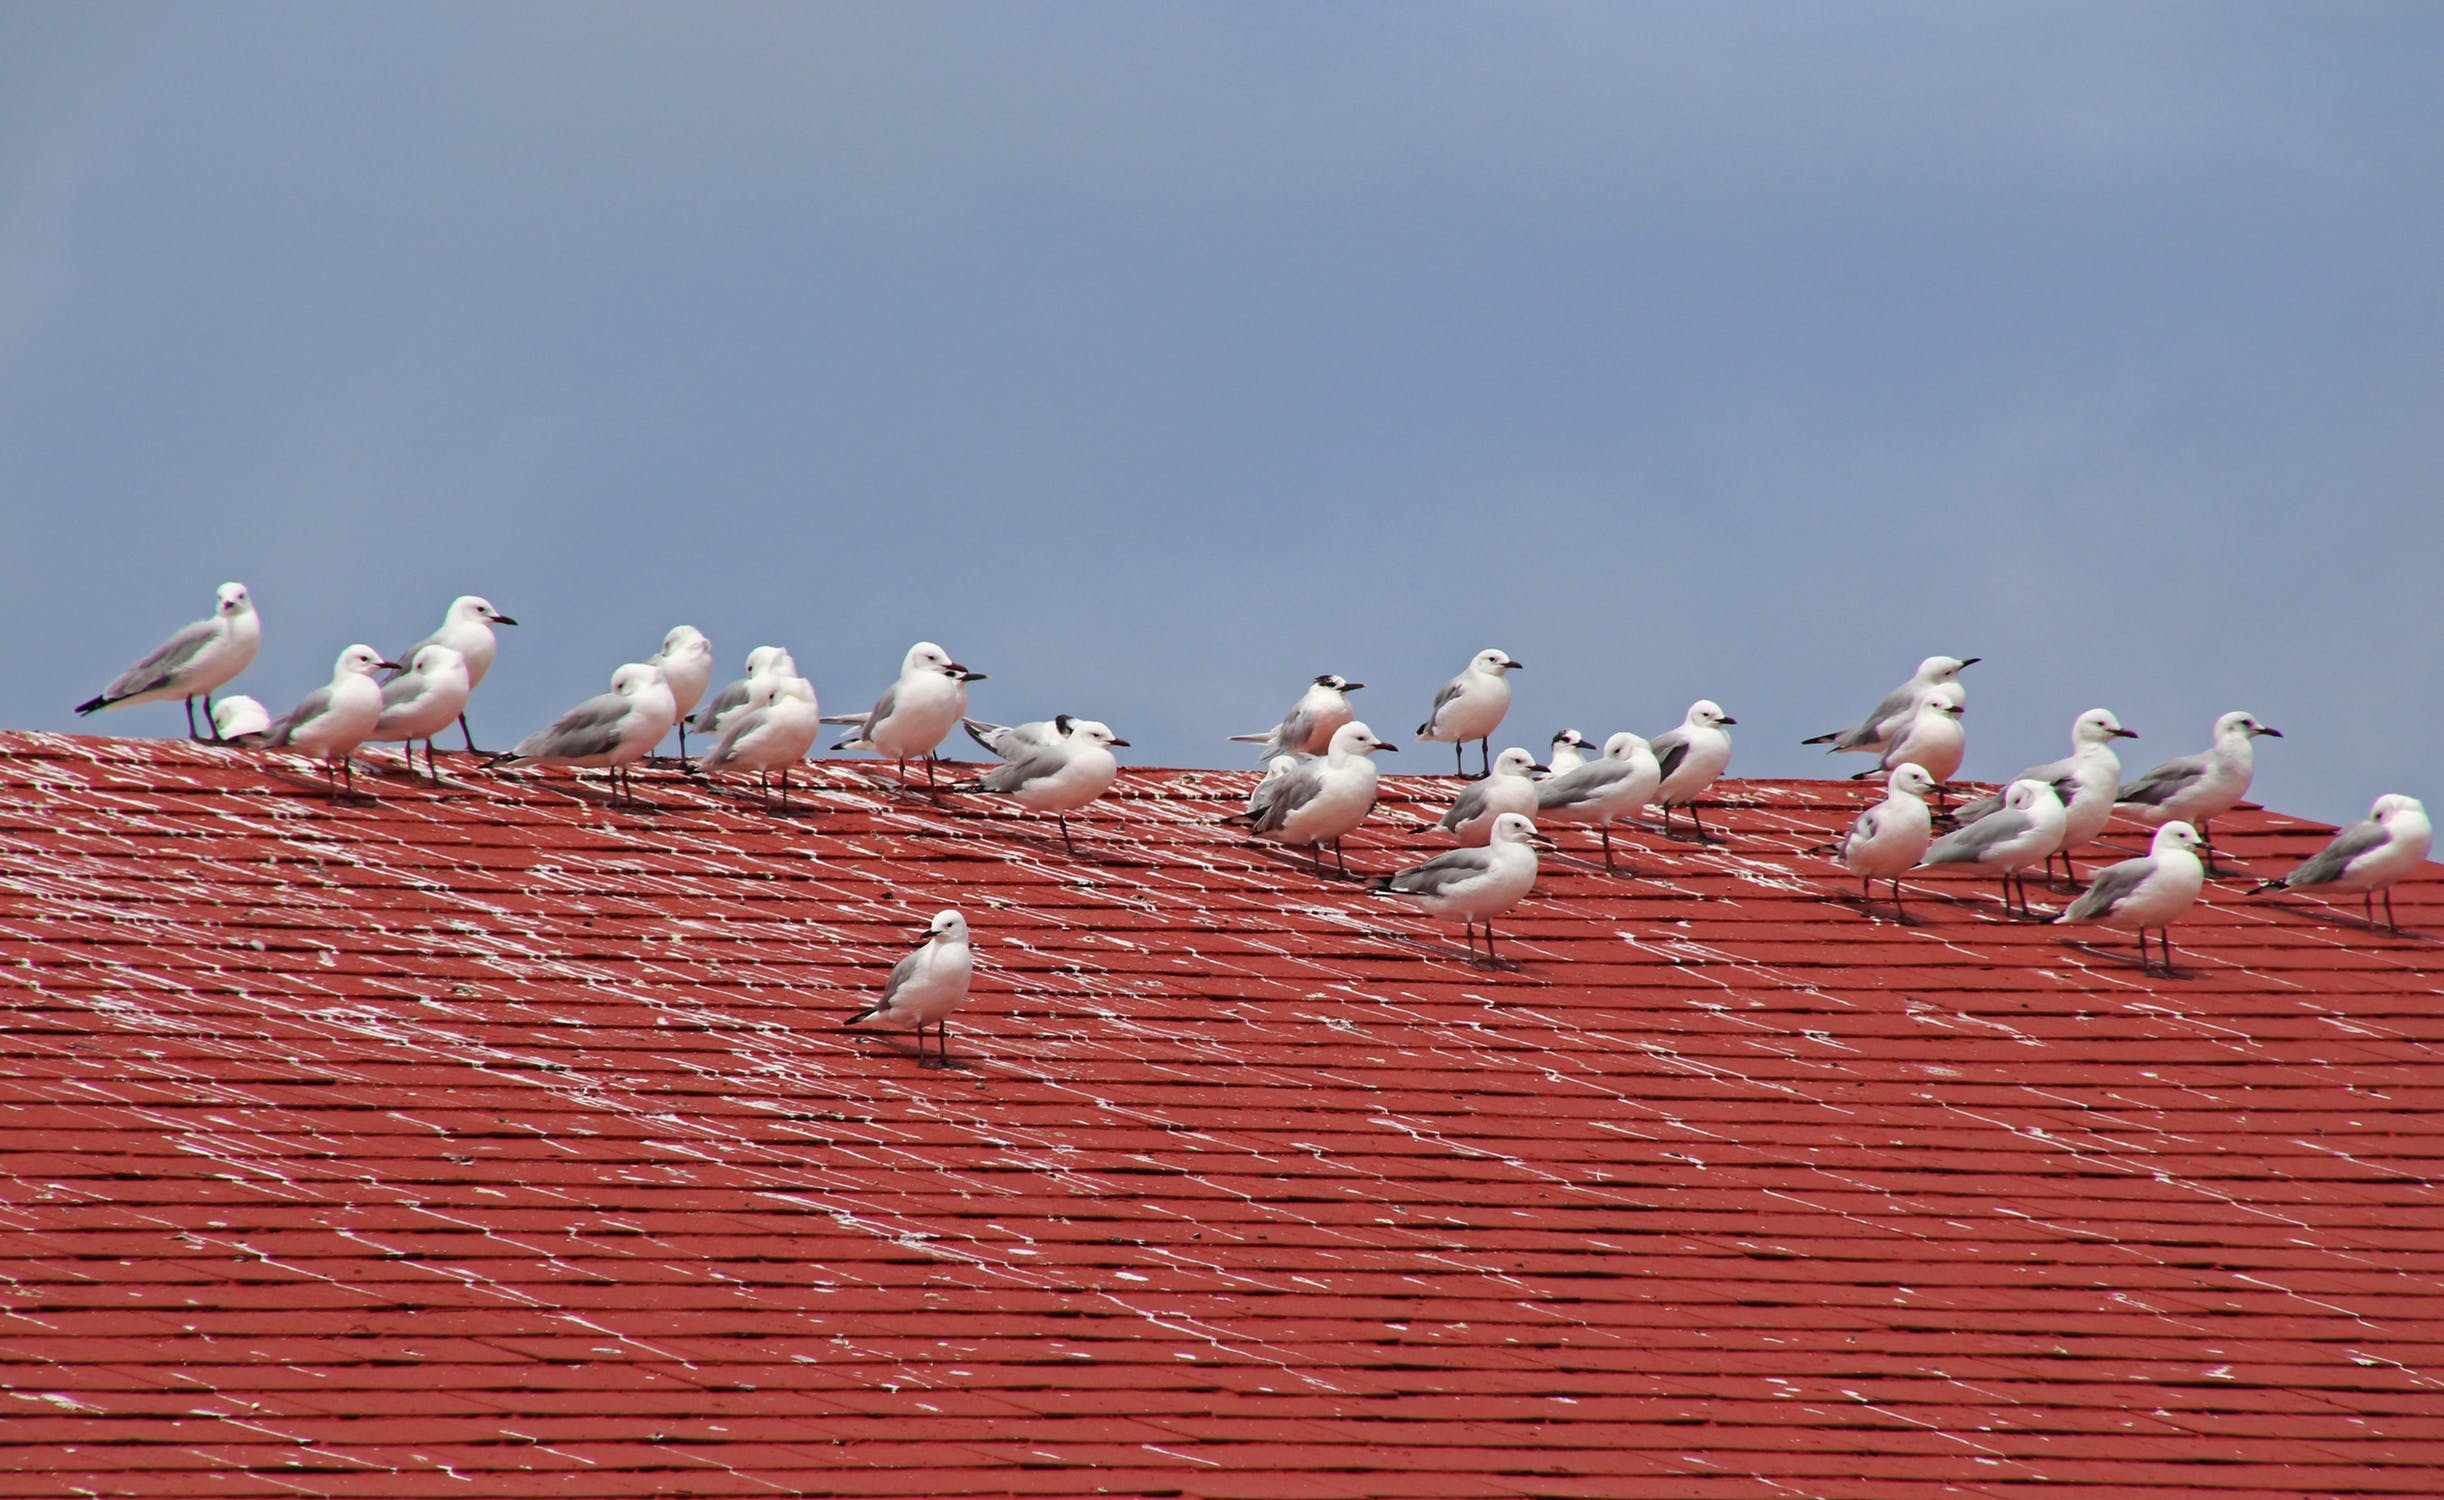 Seagulls on the red roof, Seagulls on the red roof